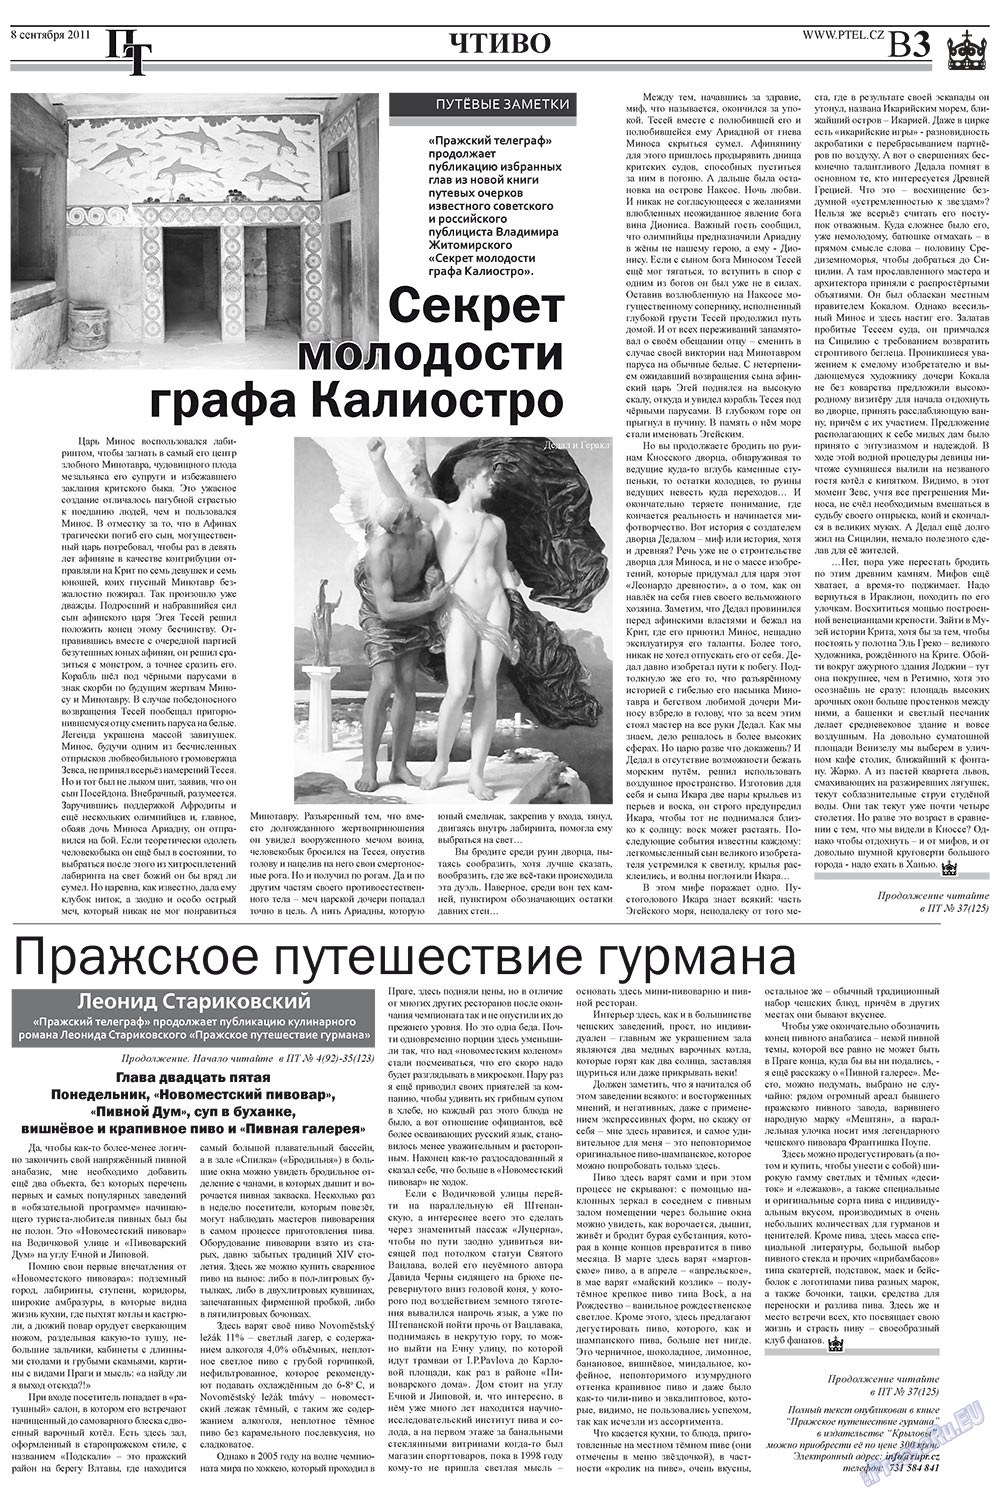 Пражский телеграф (газета). 2011 год, номер 36, стр. 11